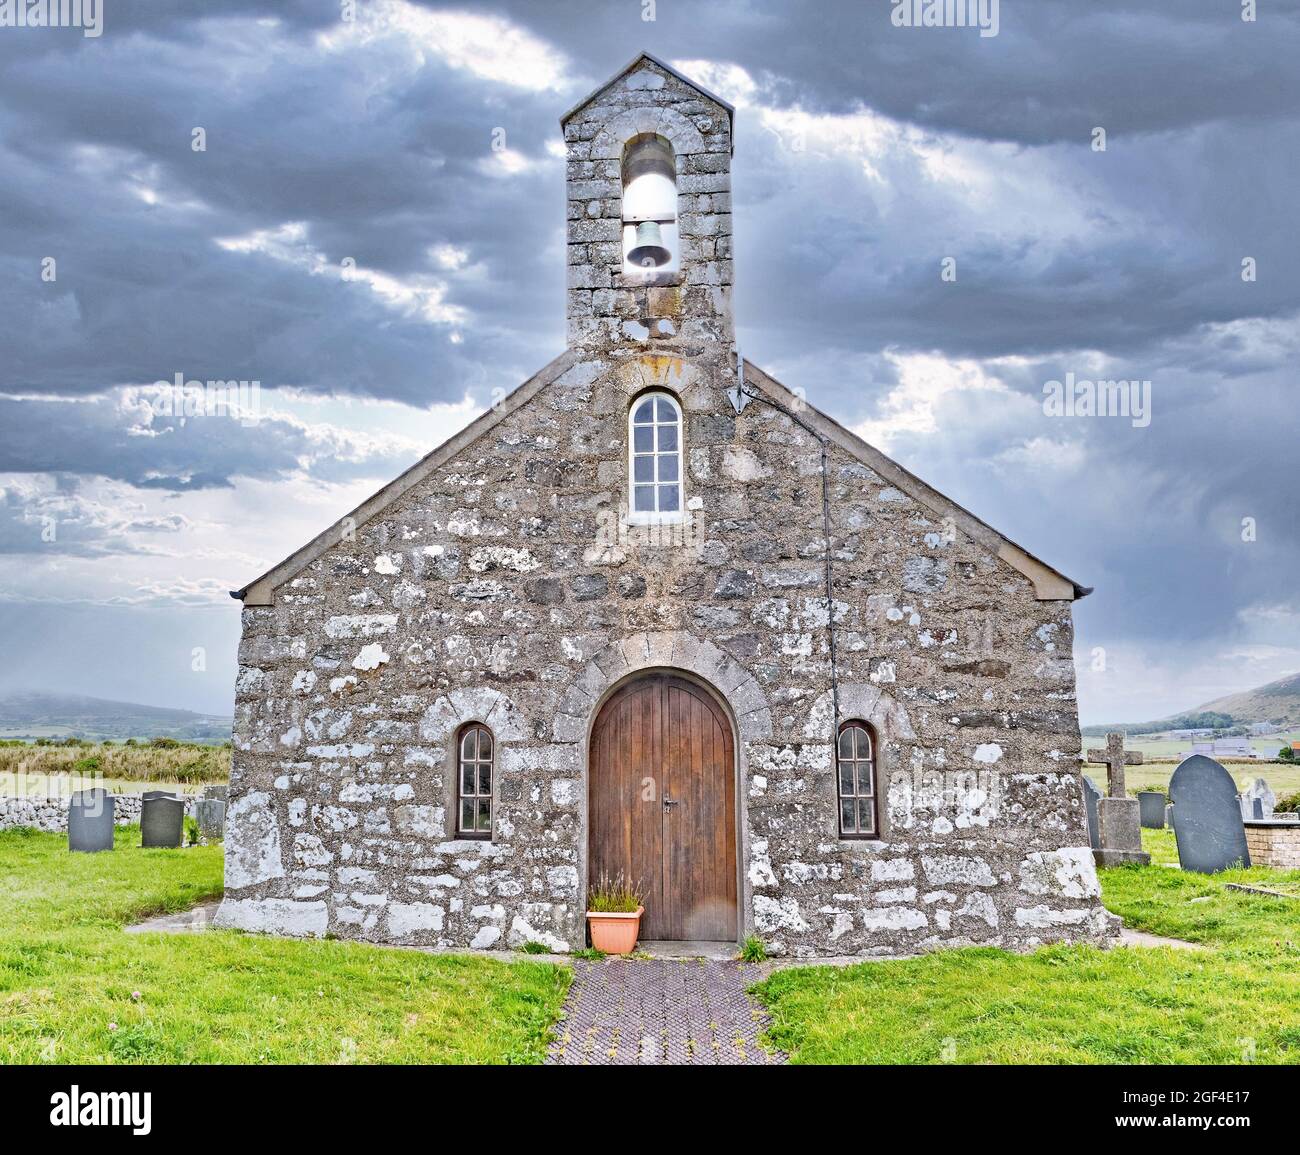 PWLLHELI, REGNO UNITO - 21 ago 2021: Churh di St Maelrhy del XV secolo a Porth Ysgo vicino ad Aberdaron Galles del Nord Foto Stock